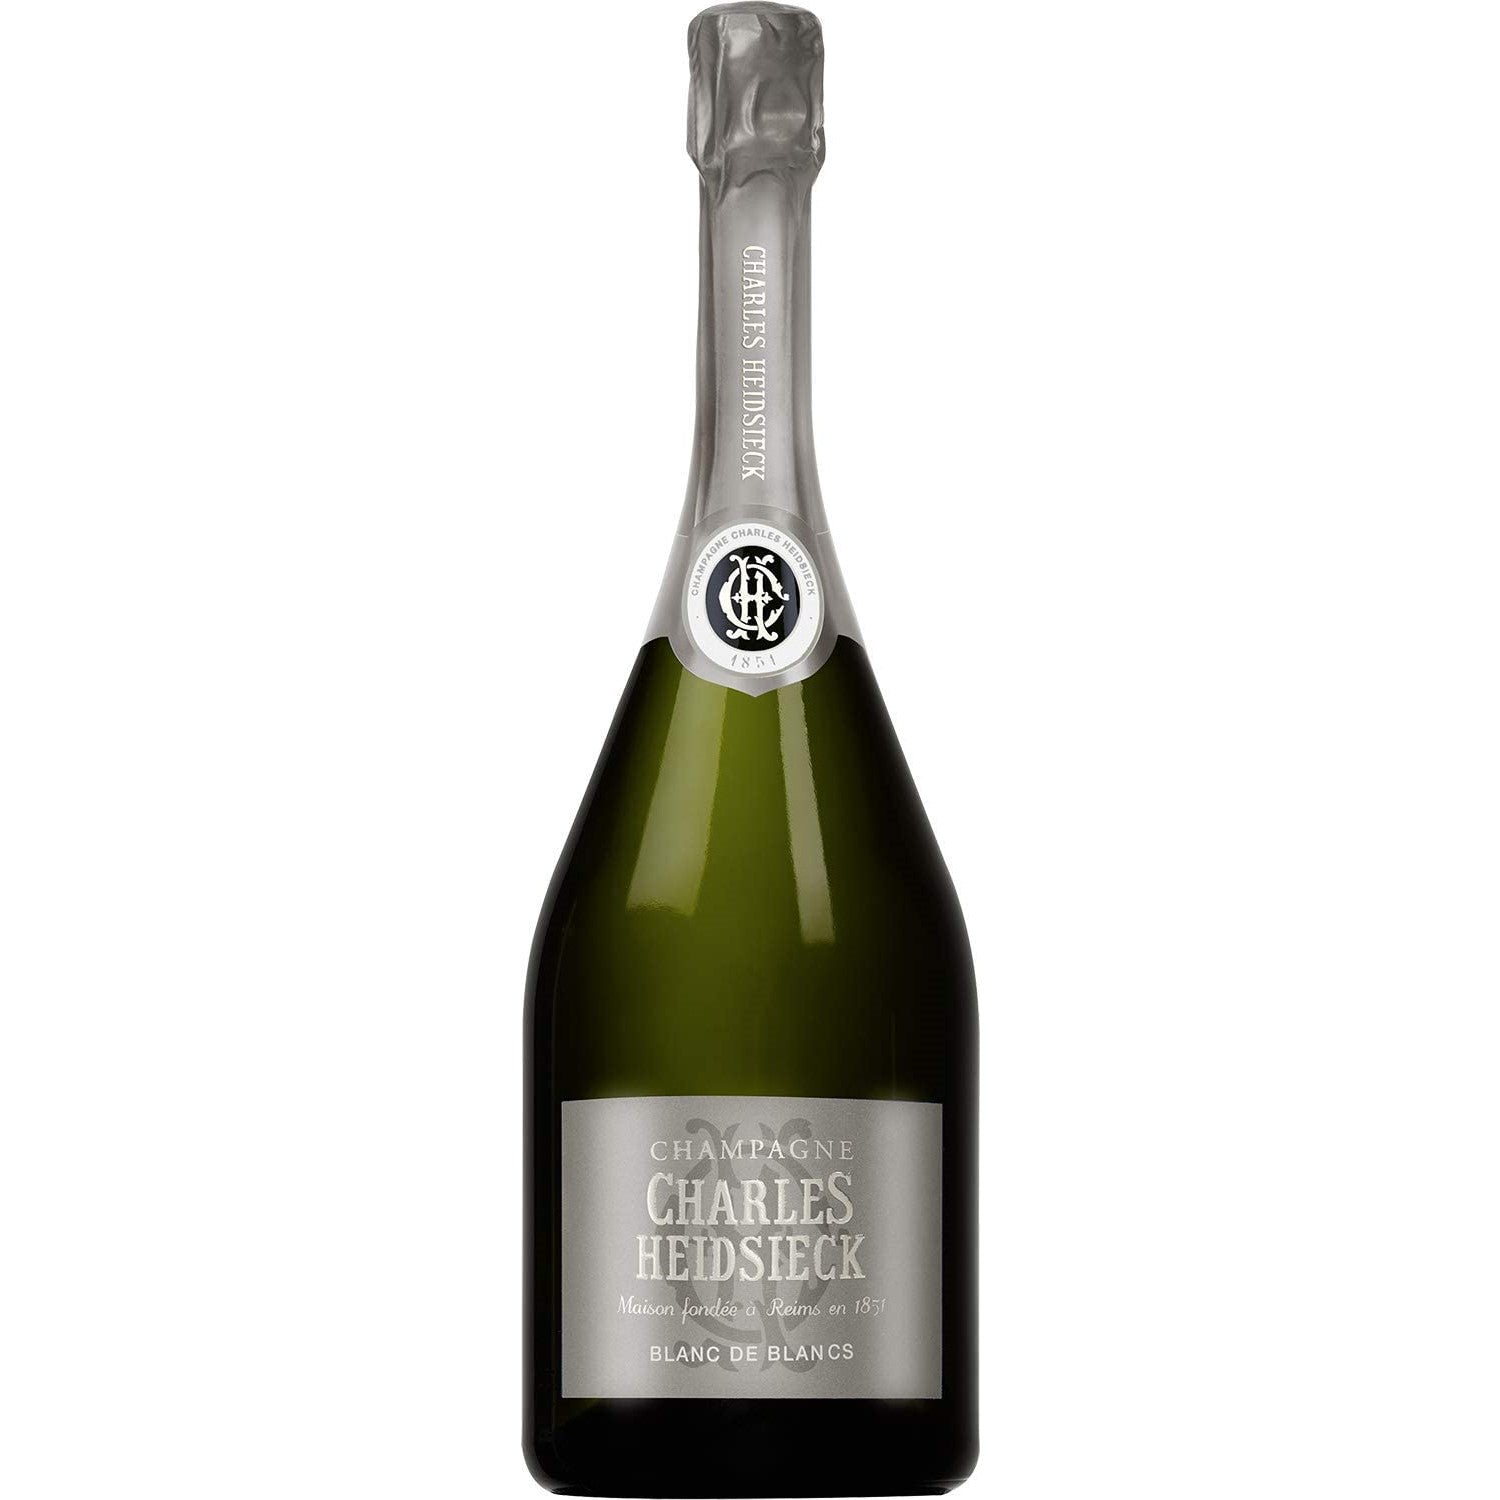 Charles Heidsieck Blanc de Blancs Champagne Champagner Schaumwein Frankreich (3 x 0.75l) - Versanel -